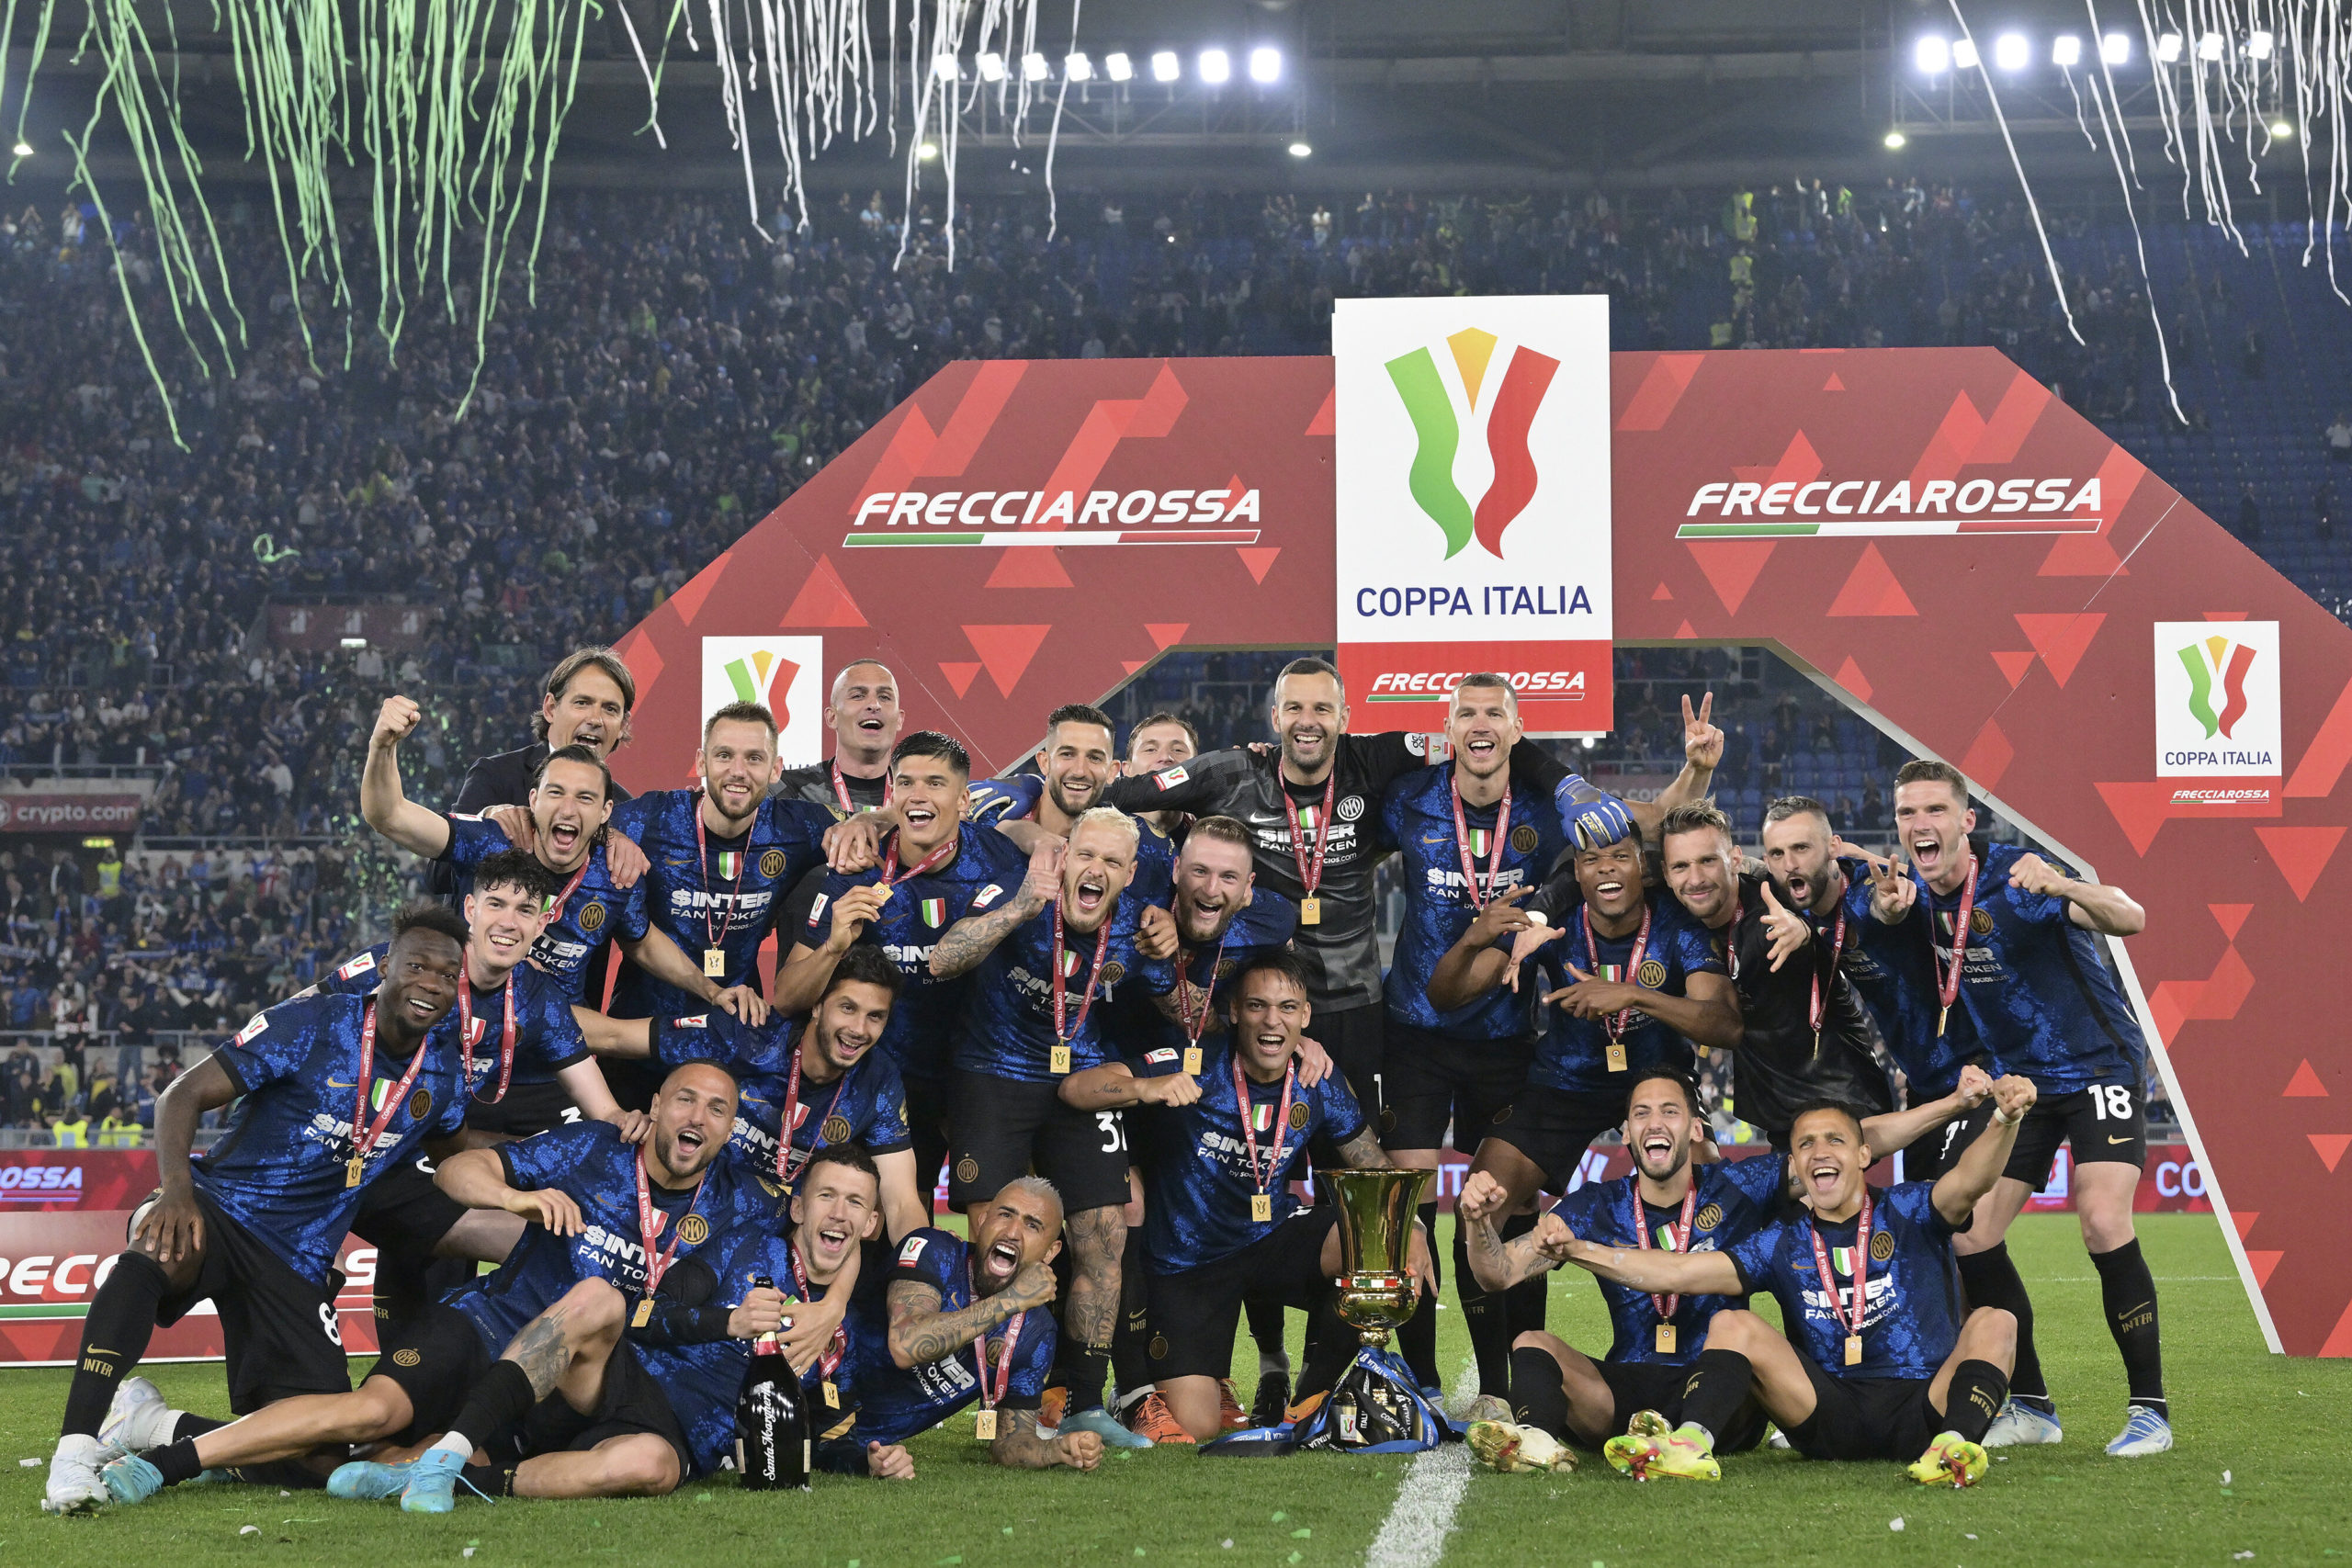 Škriniarov Inter sa teší z Talianskeho pohára, porazený Juventus je po 11 rokoch prvý raz bez trofeje (video)